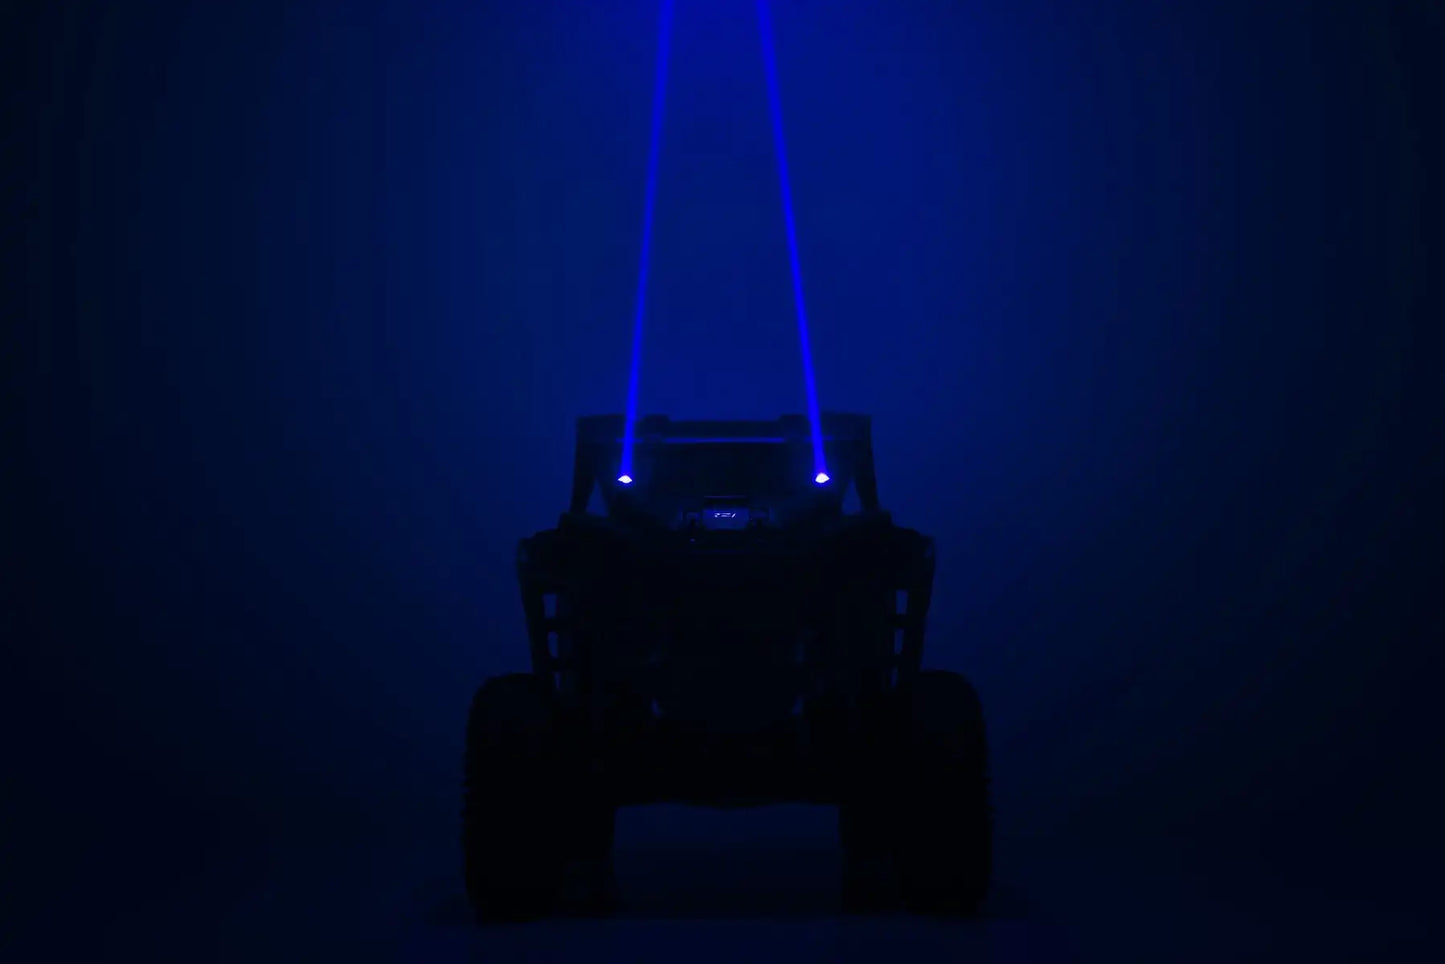 Laser Whip Light Kit RGBW | Pair